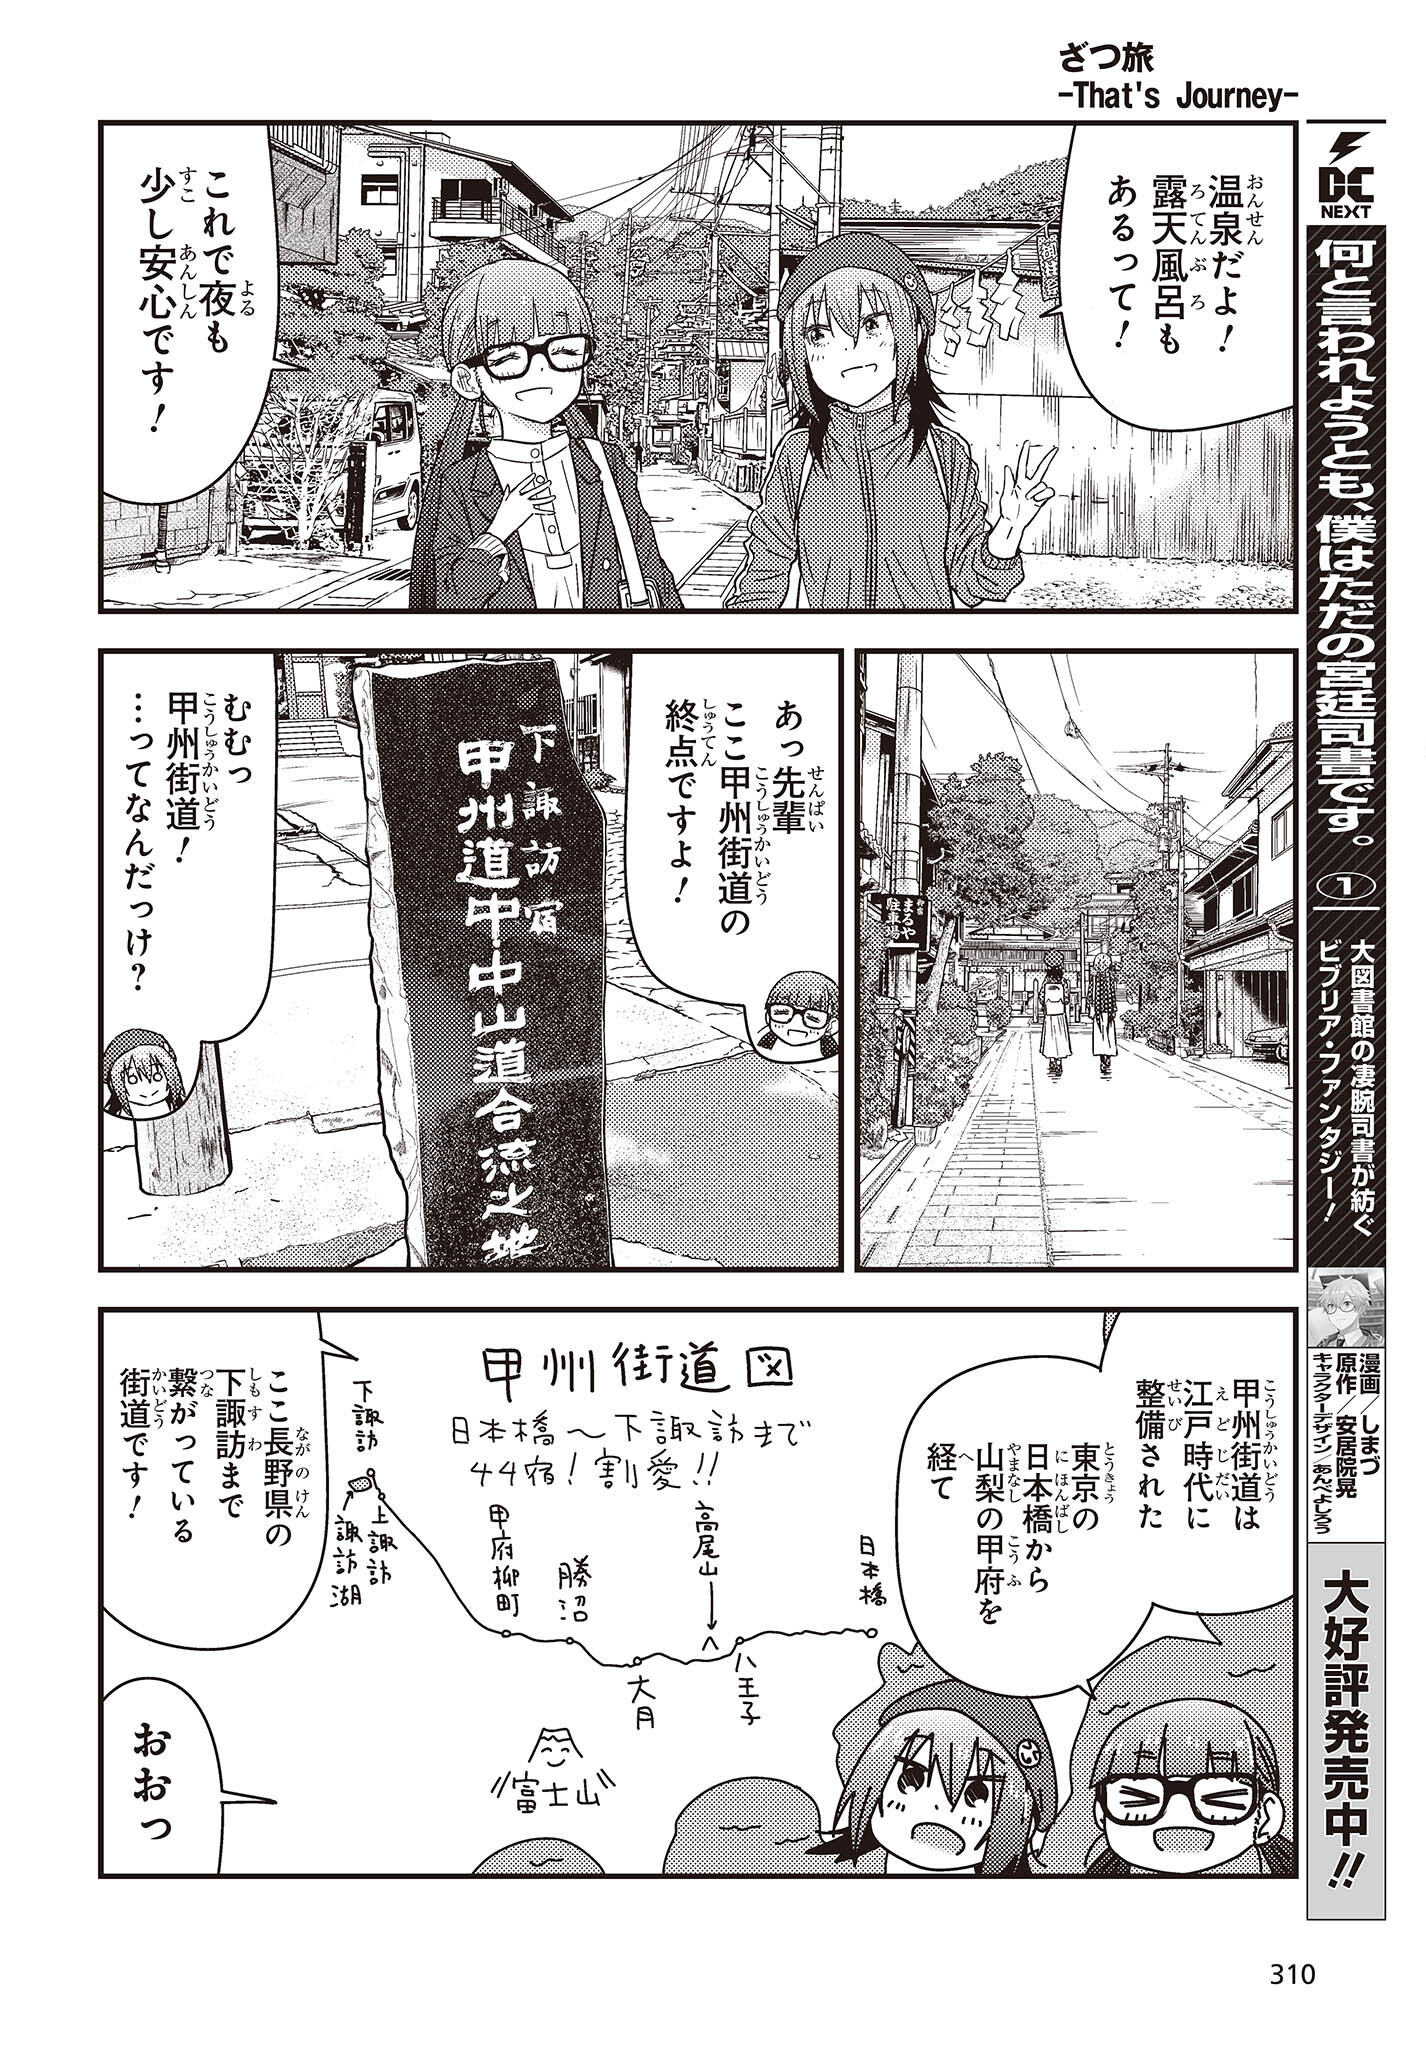 ざつ旅-That’s Journey- 第28話 - Page 14